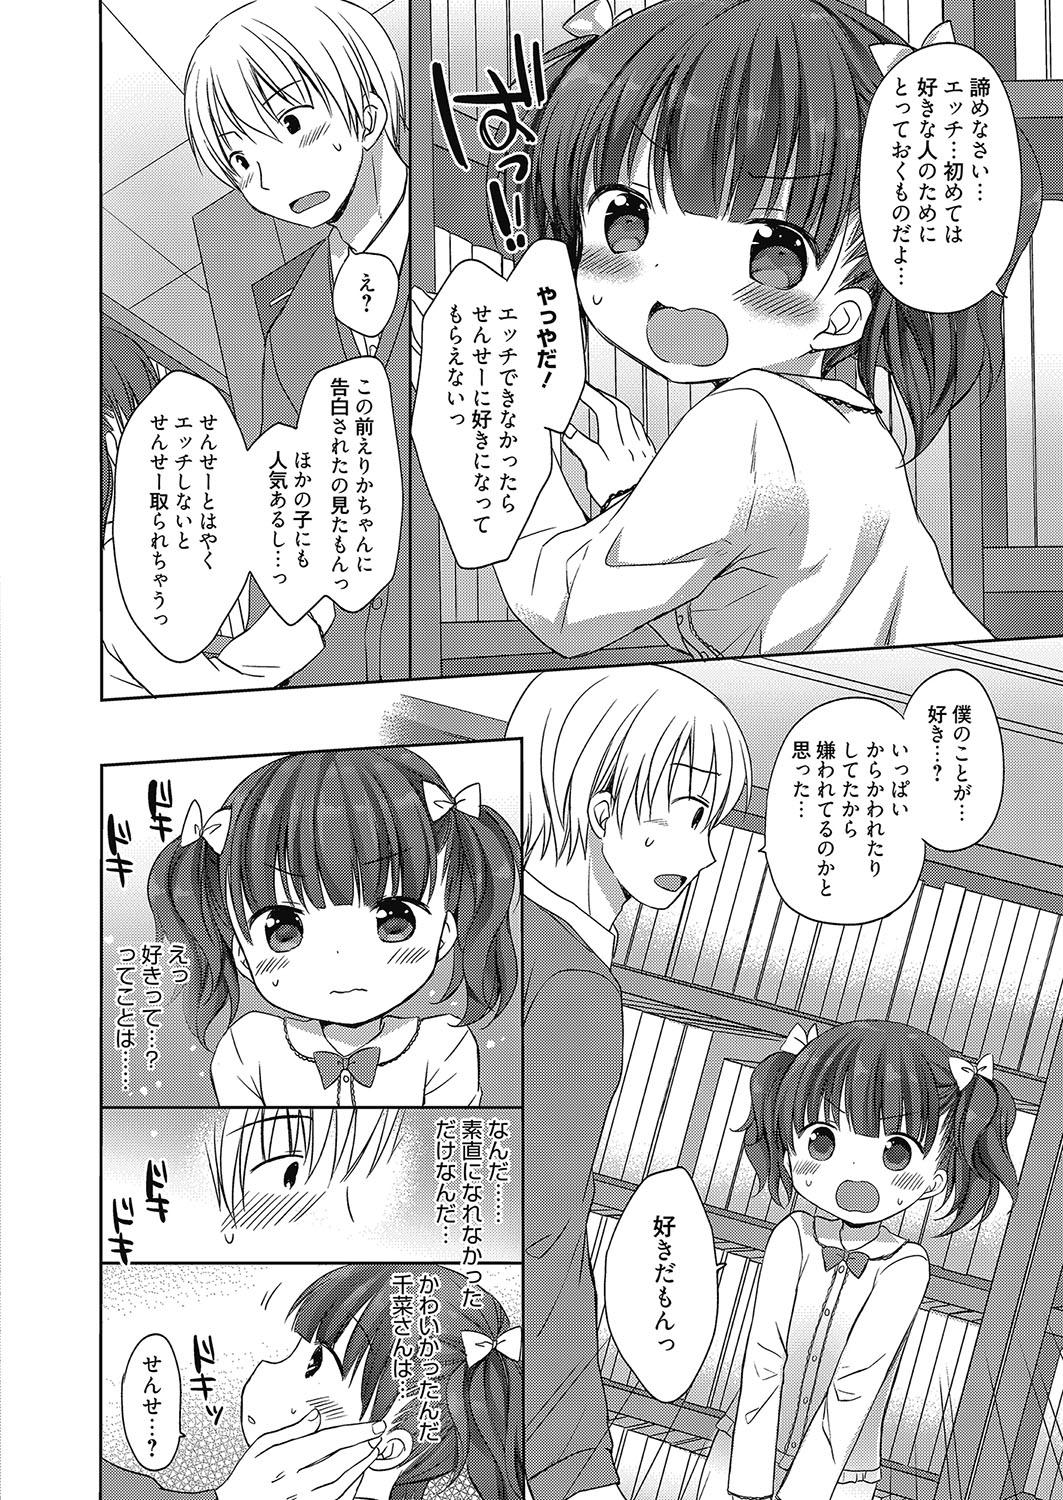 Hiddencam Web Manga Bangaichi Vol. 8 Boobs - Page 9